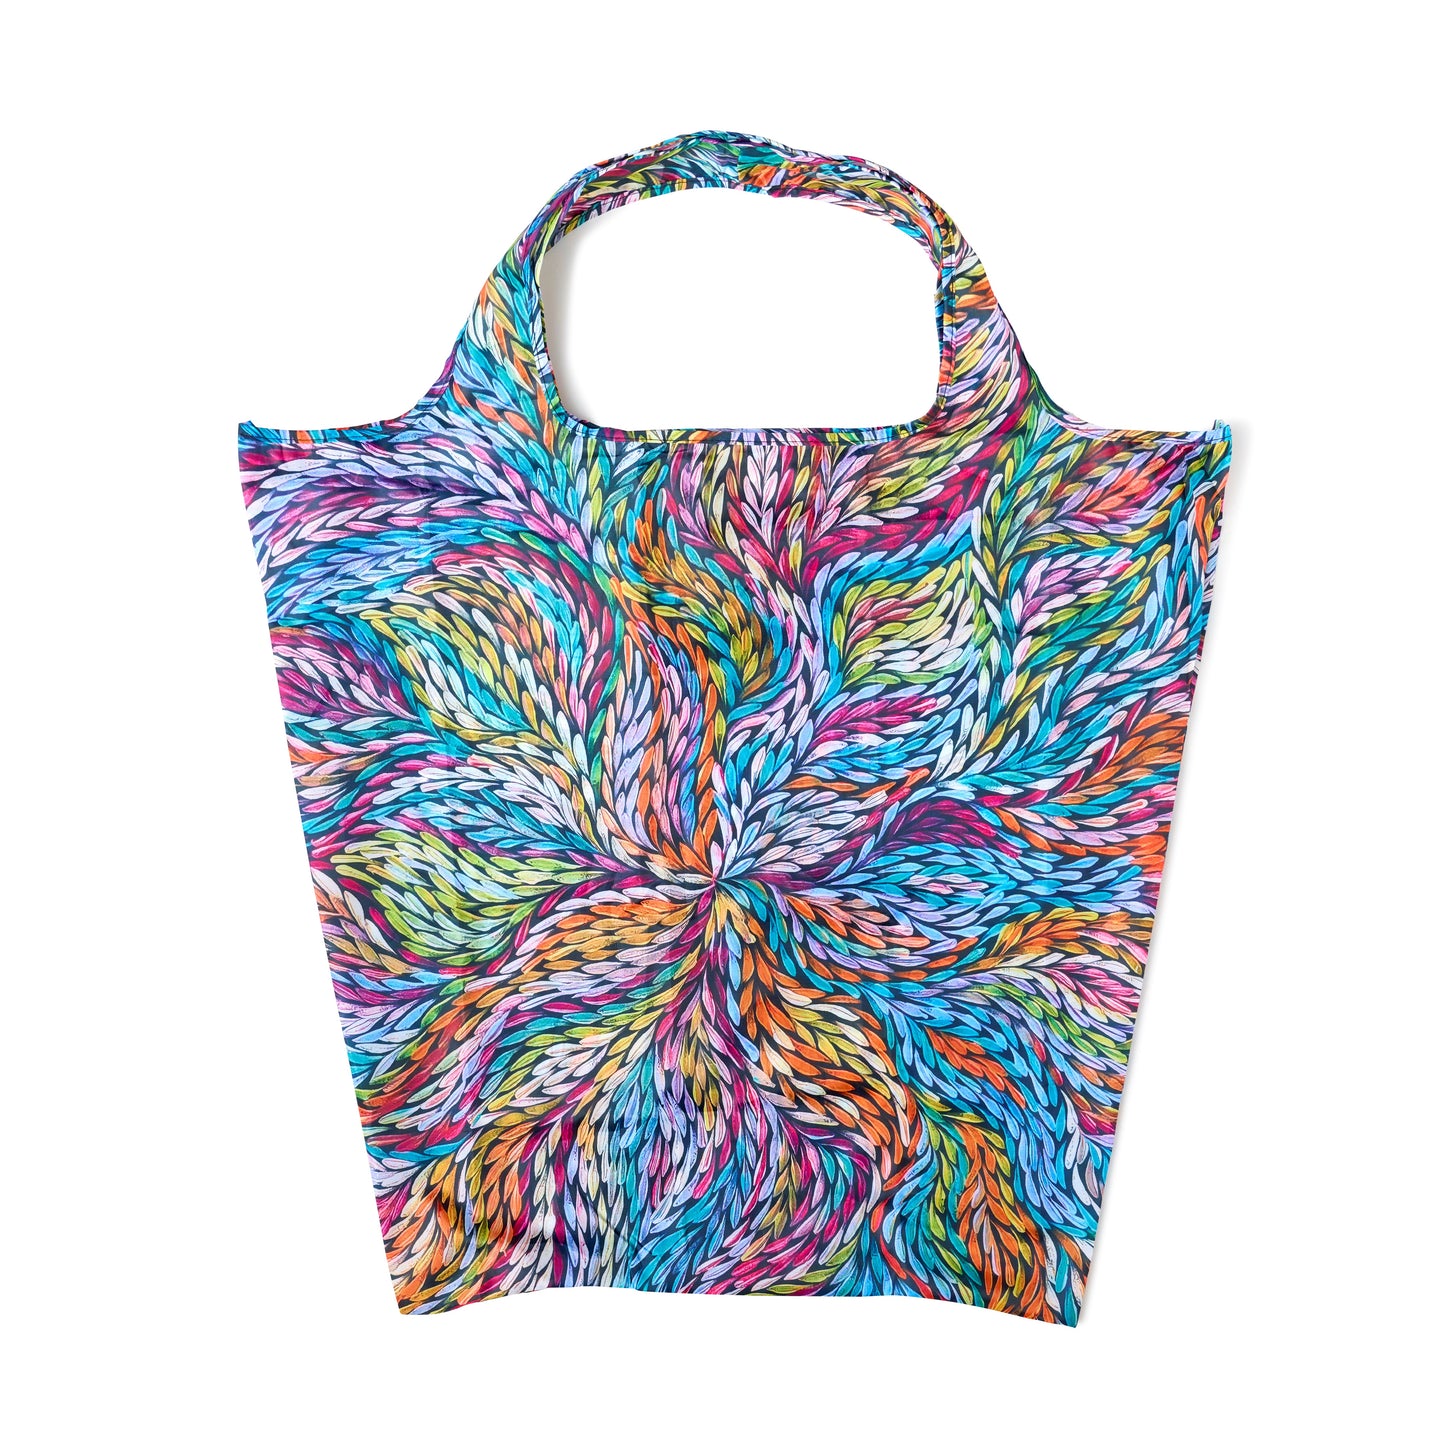 Large Foldable Shopping Bag - Rosemary Pitjara